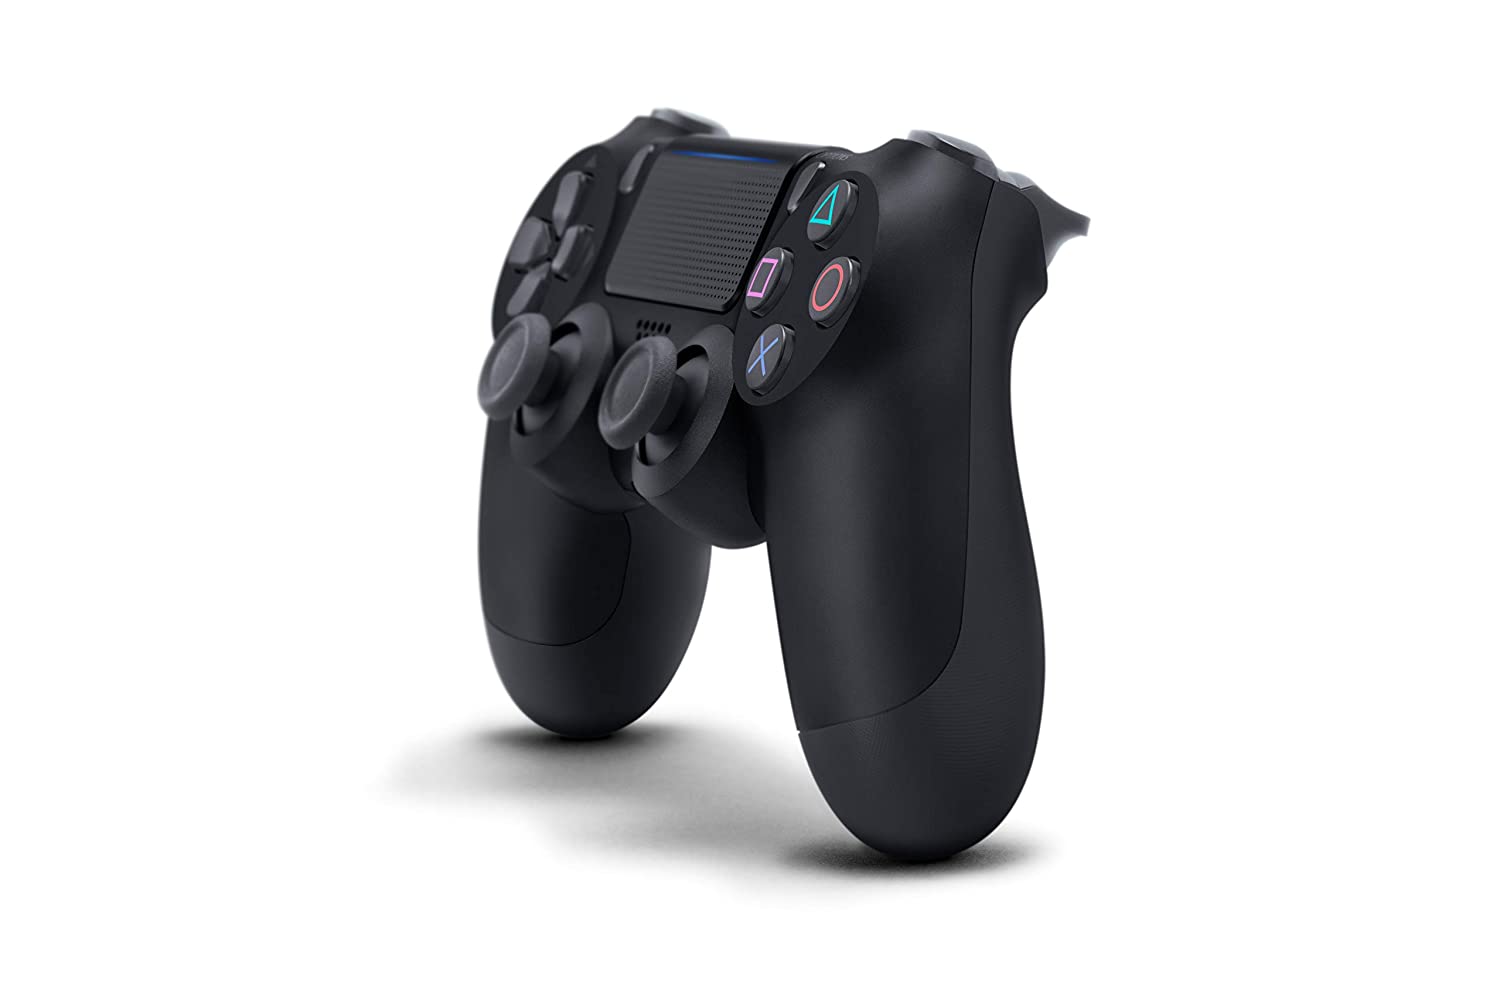 テレビ/映像機器 その他 DualShock 4 Wireless Controller for PlayStation 4 – Jet Black 